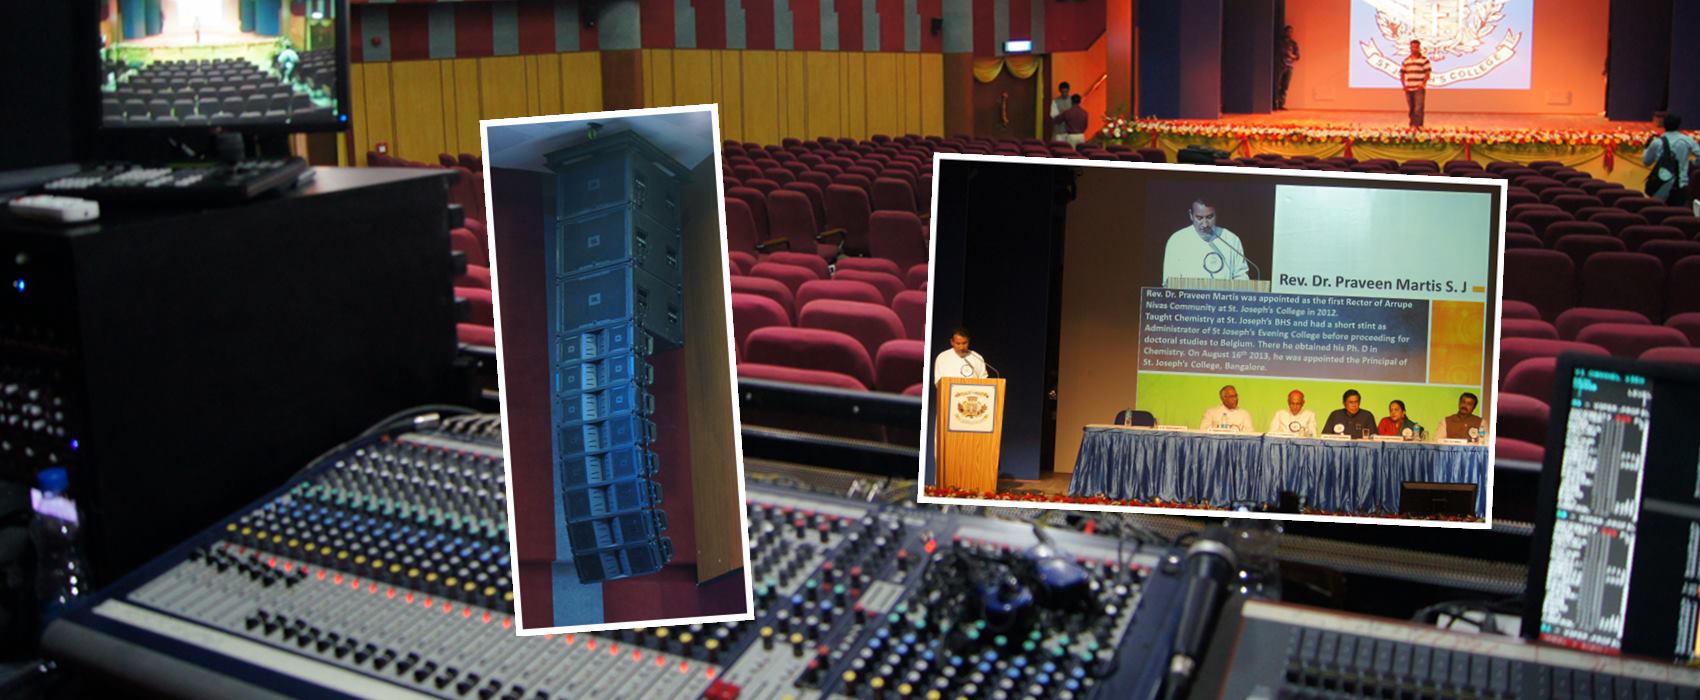 St.Josephs College Auditorium, Acoustic Consultant,Audio Design,System Integration -Acoustic Control